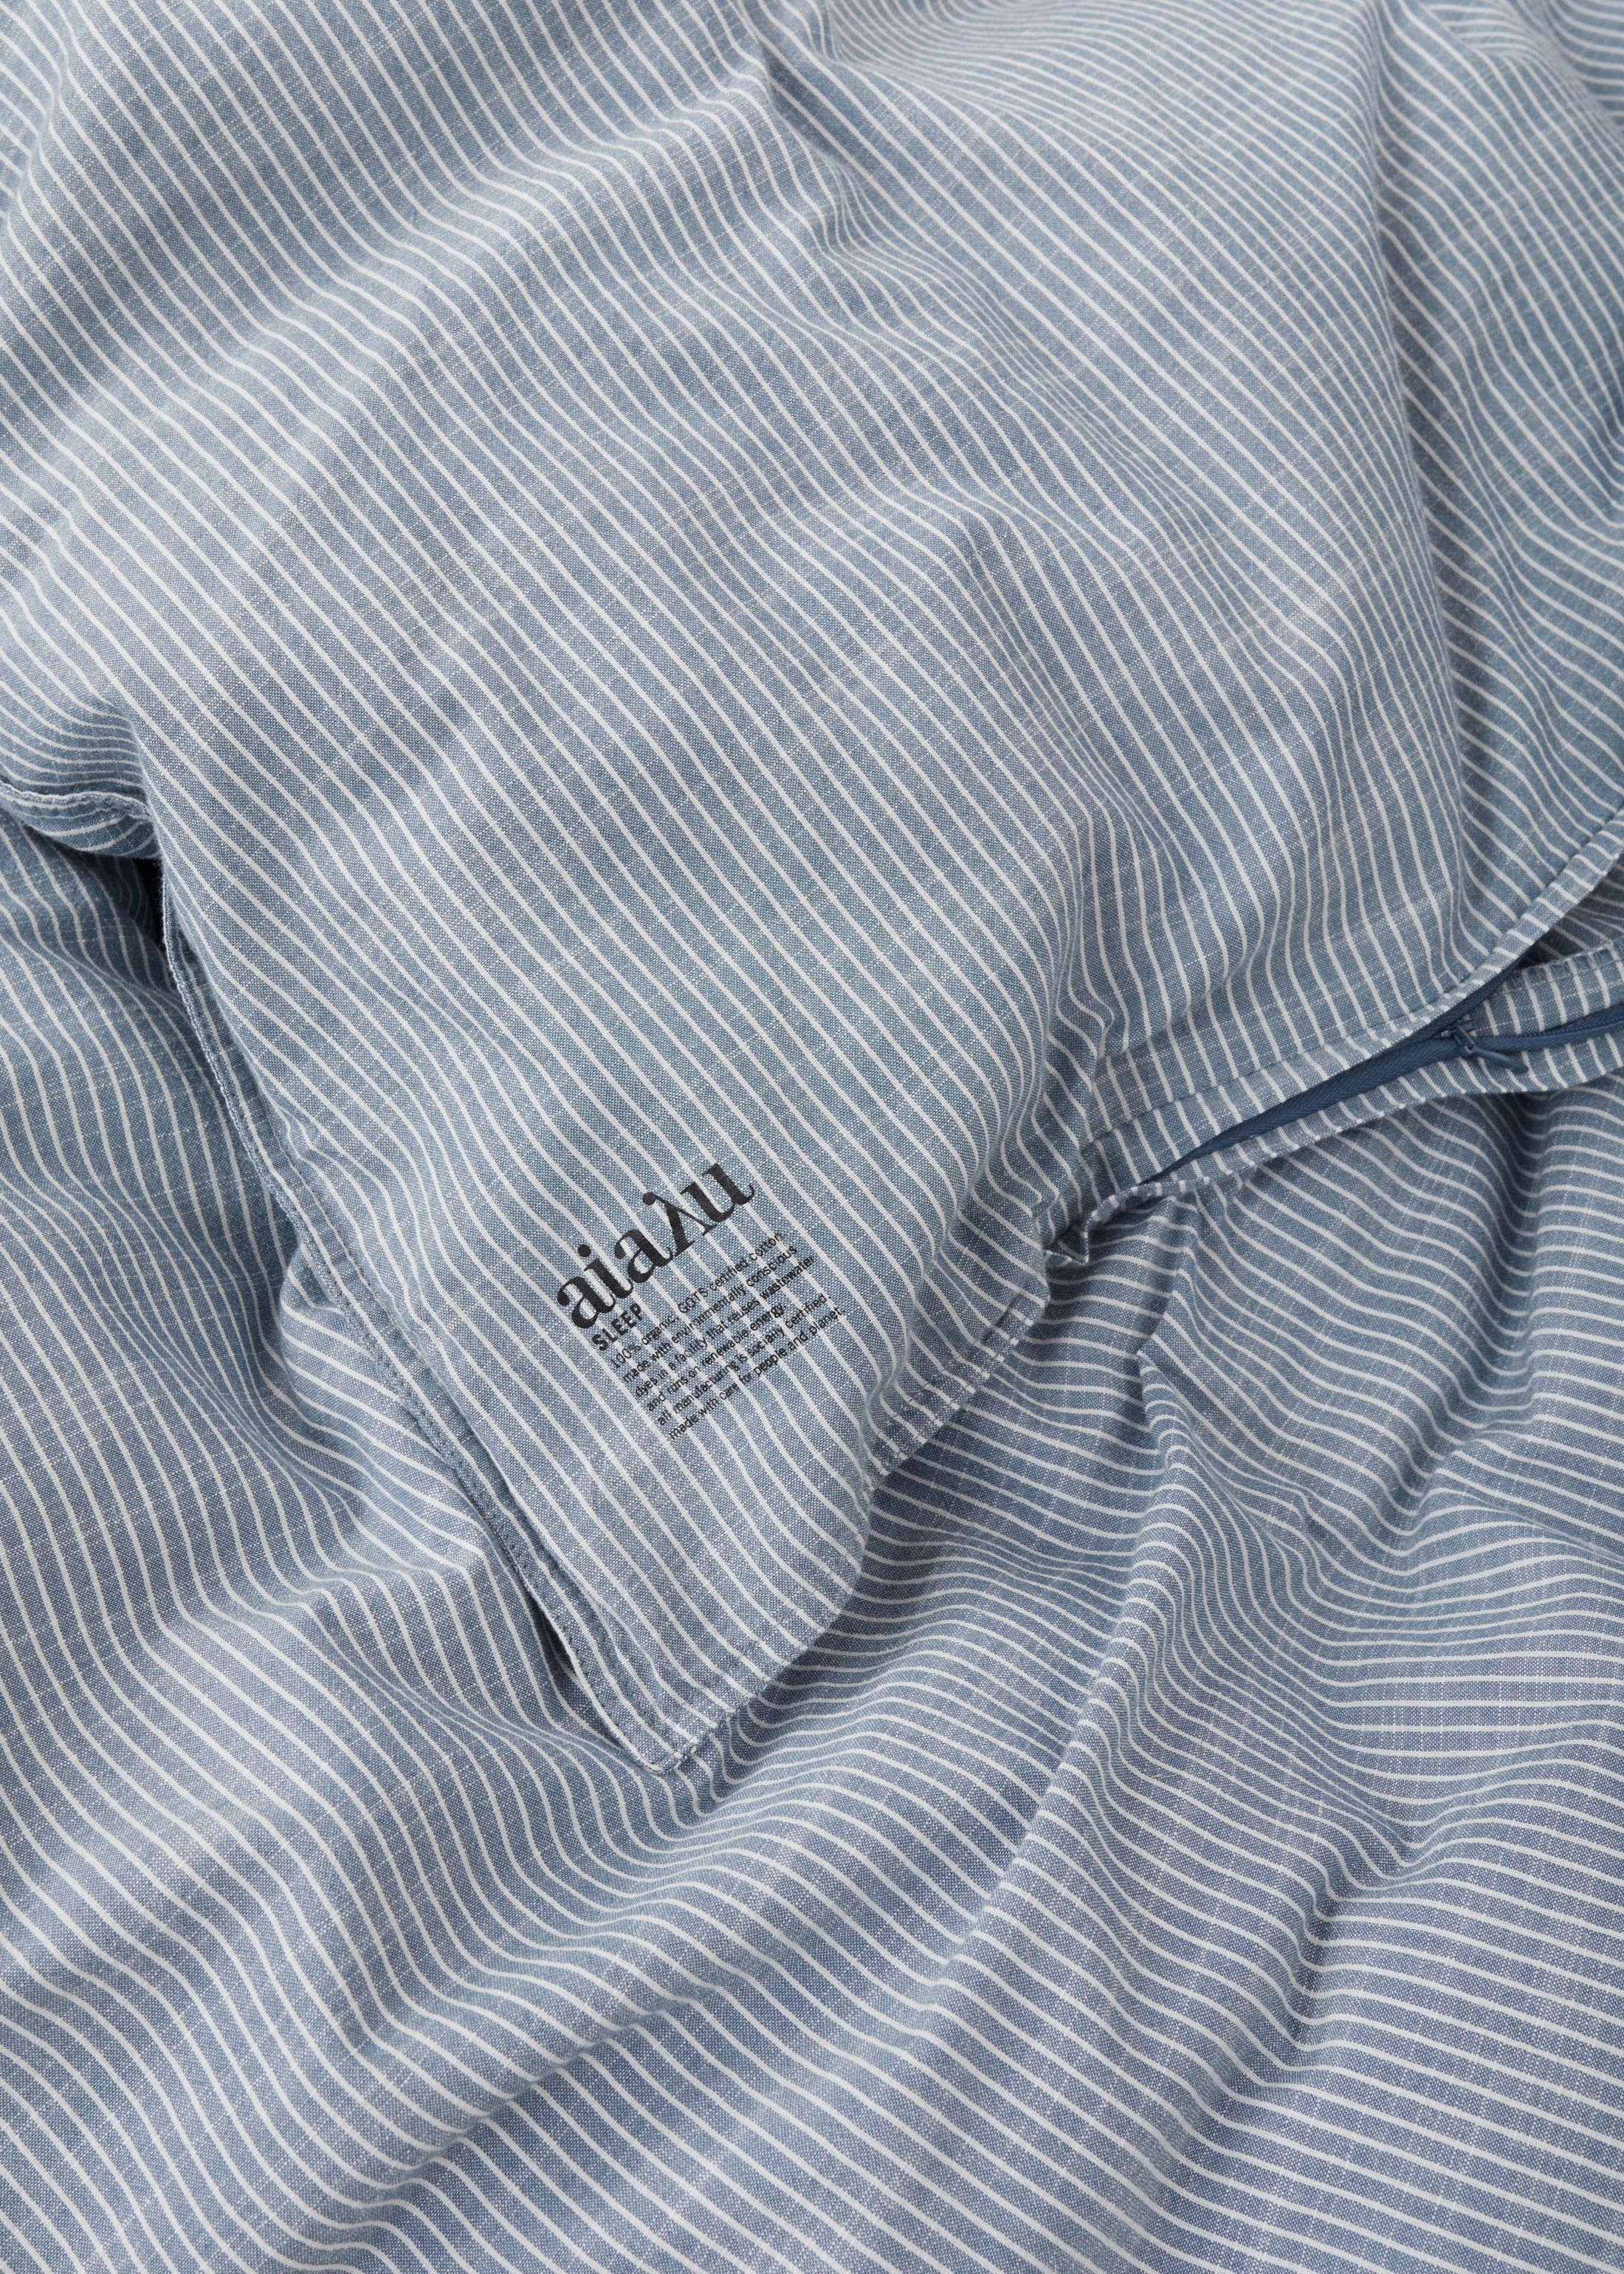 Duvet set & pillow case - striped indigo | Indigo